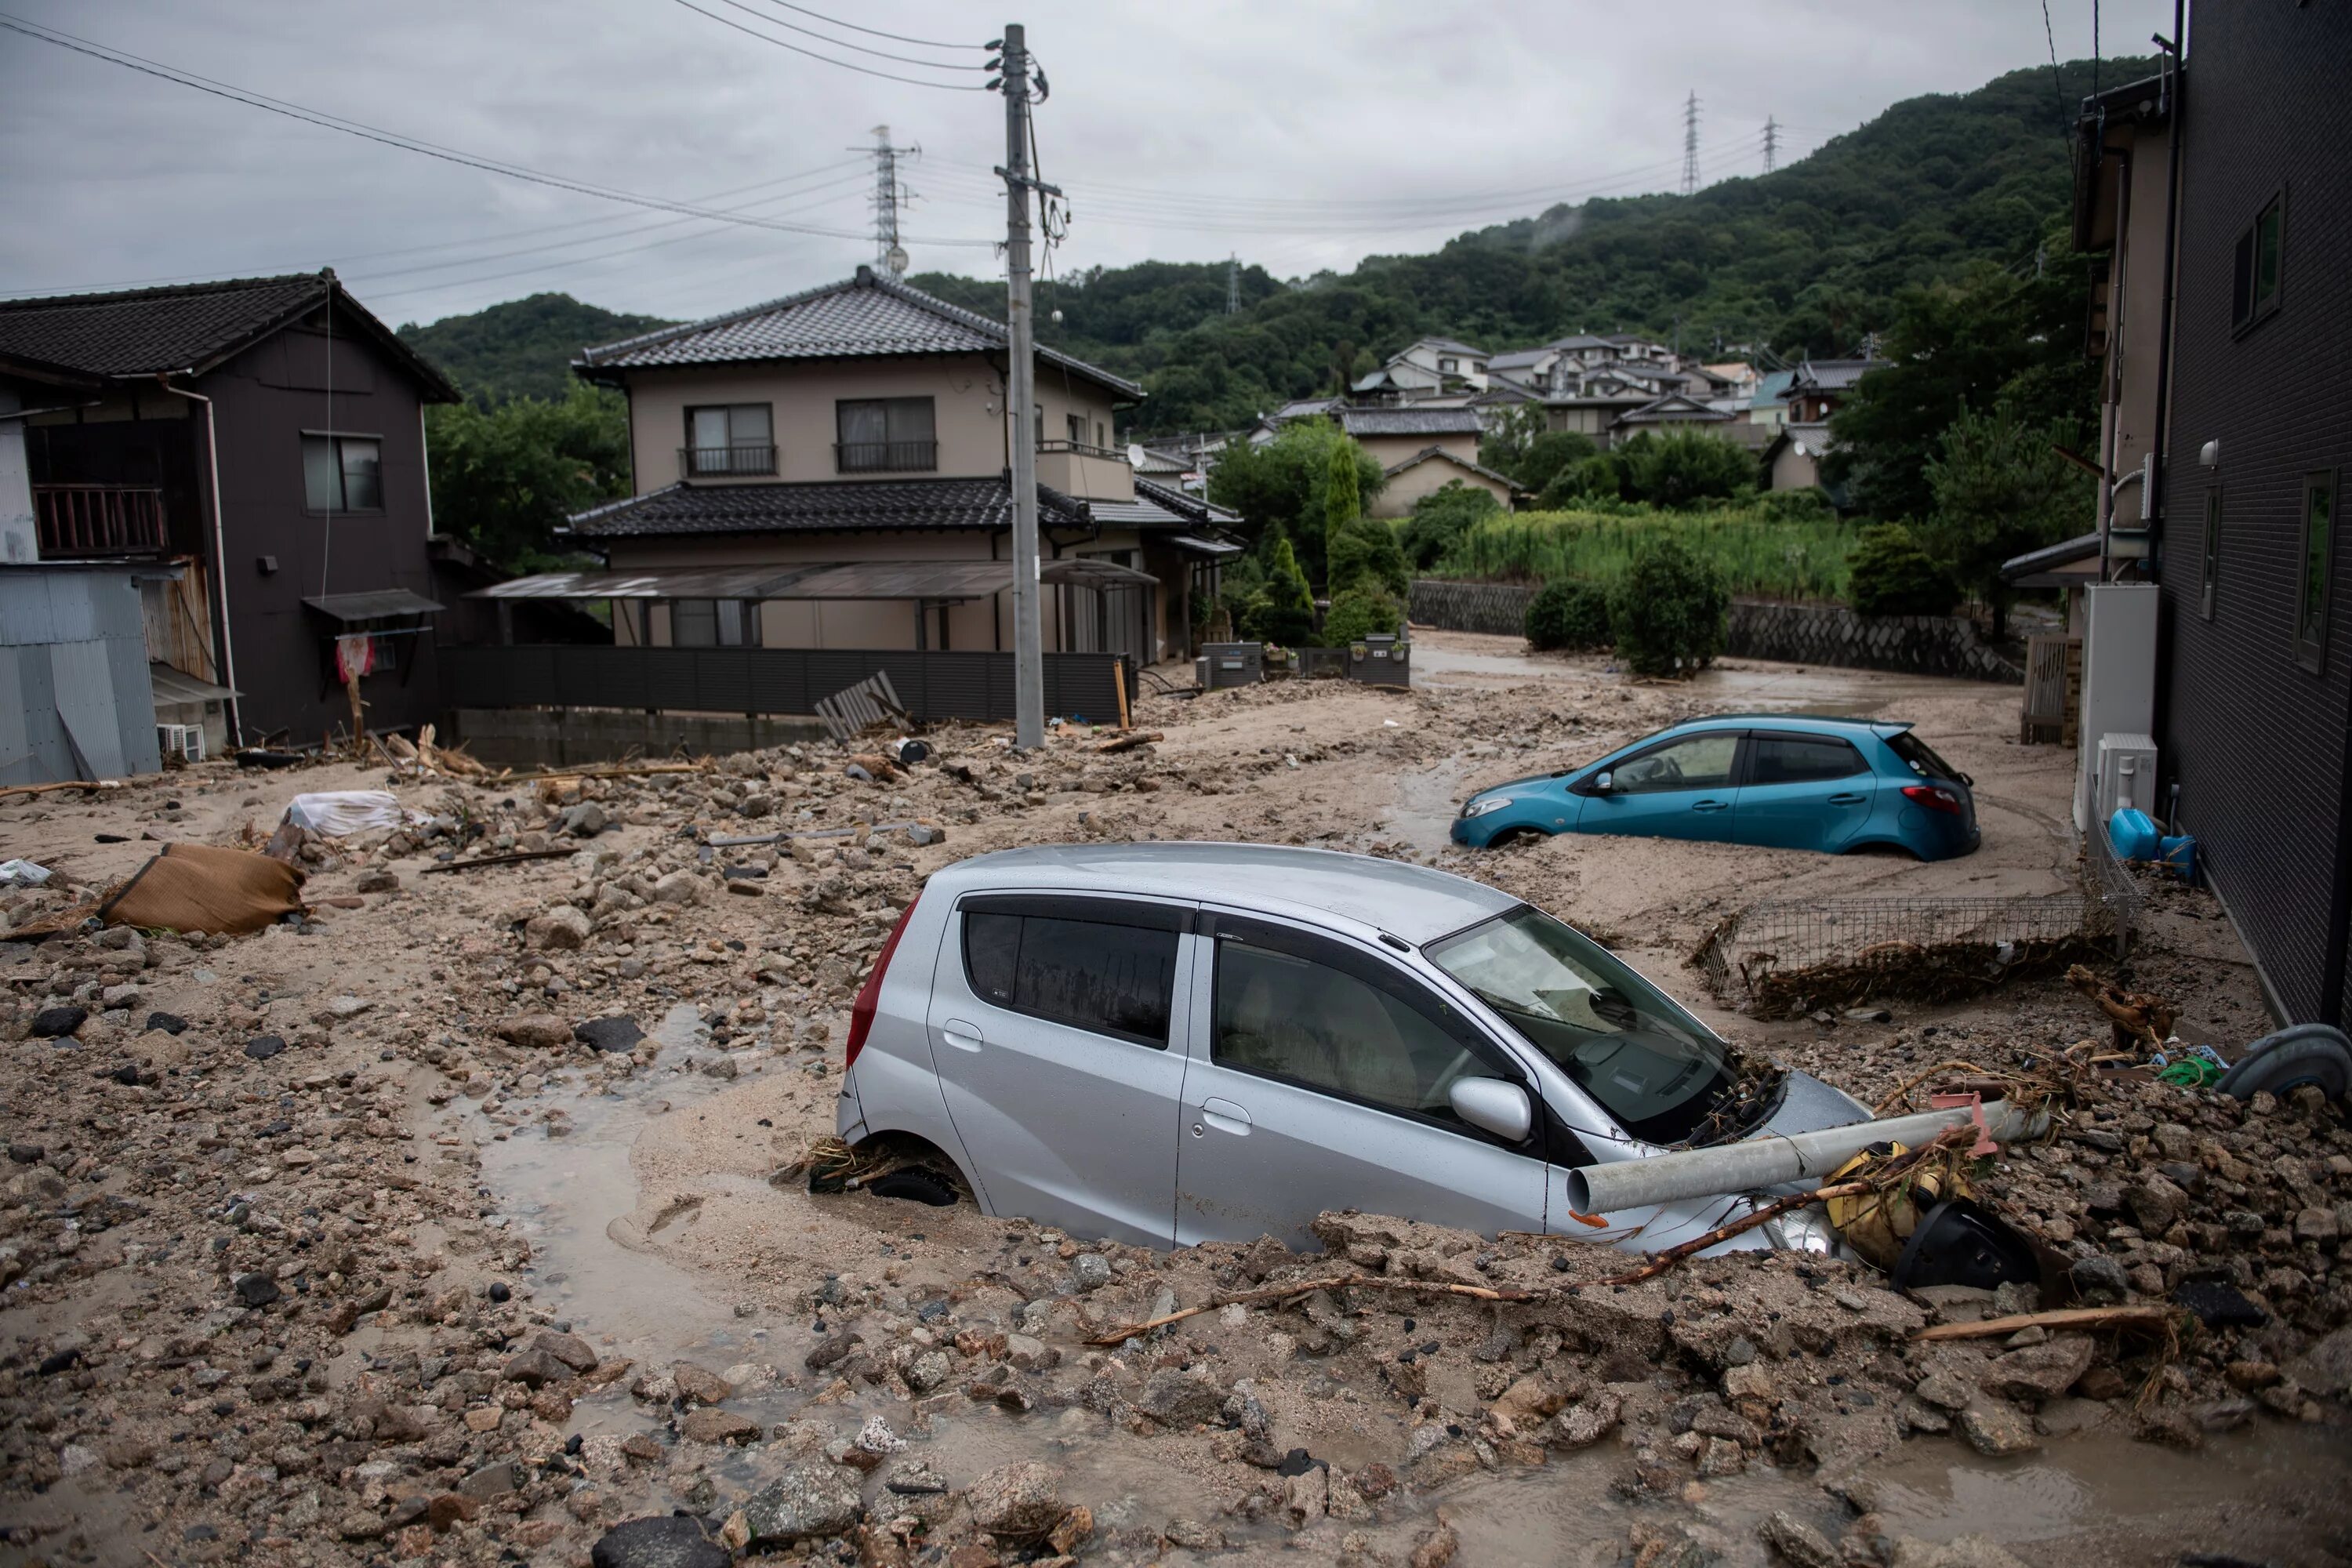 Что будет после наводнения. Наводнение в Японии (2018). Япония после наводнения 2018. Токио потоп. Последствия наводнений.